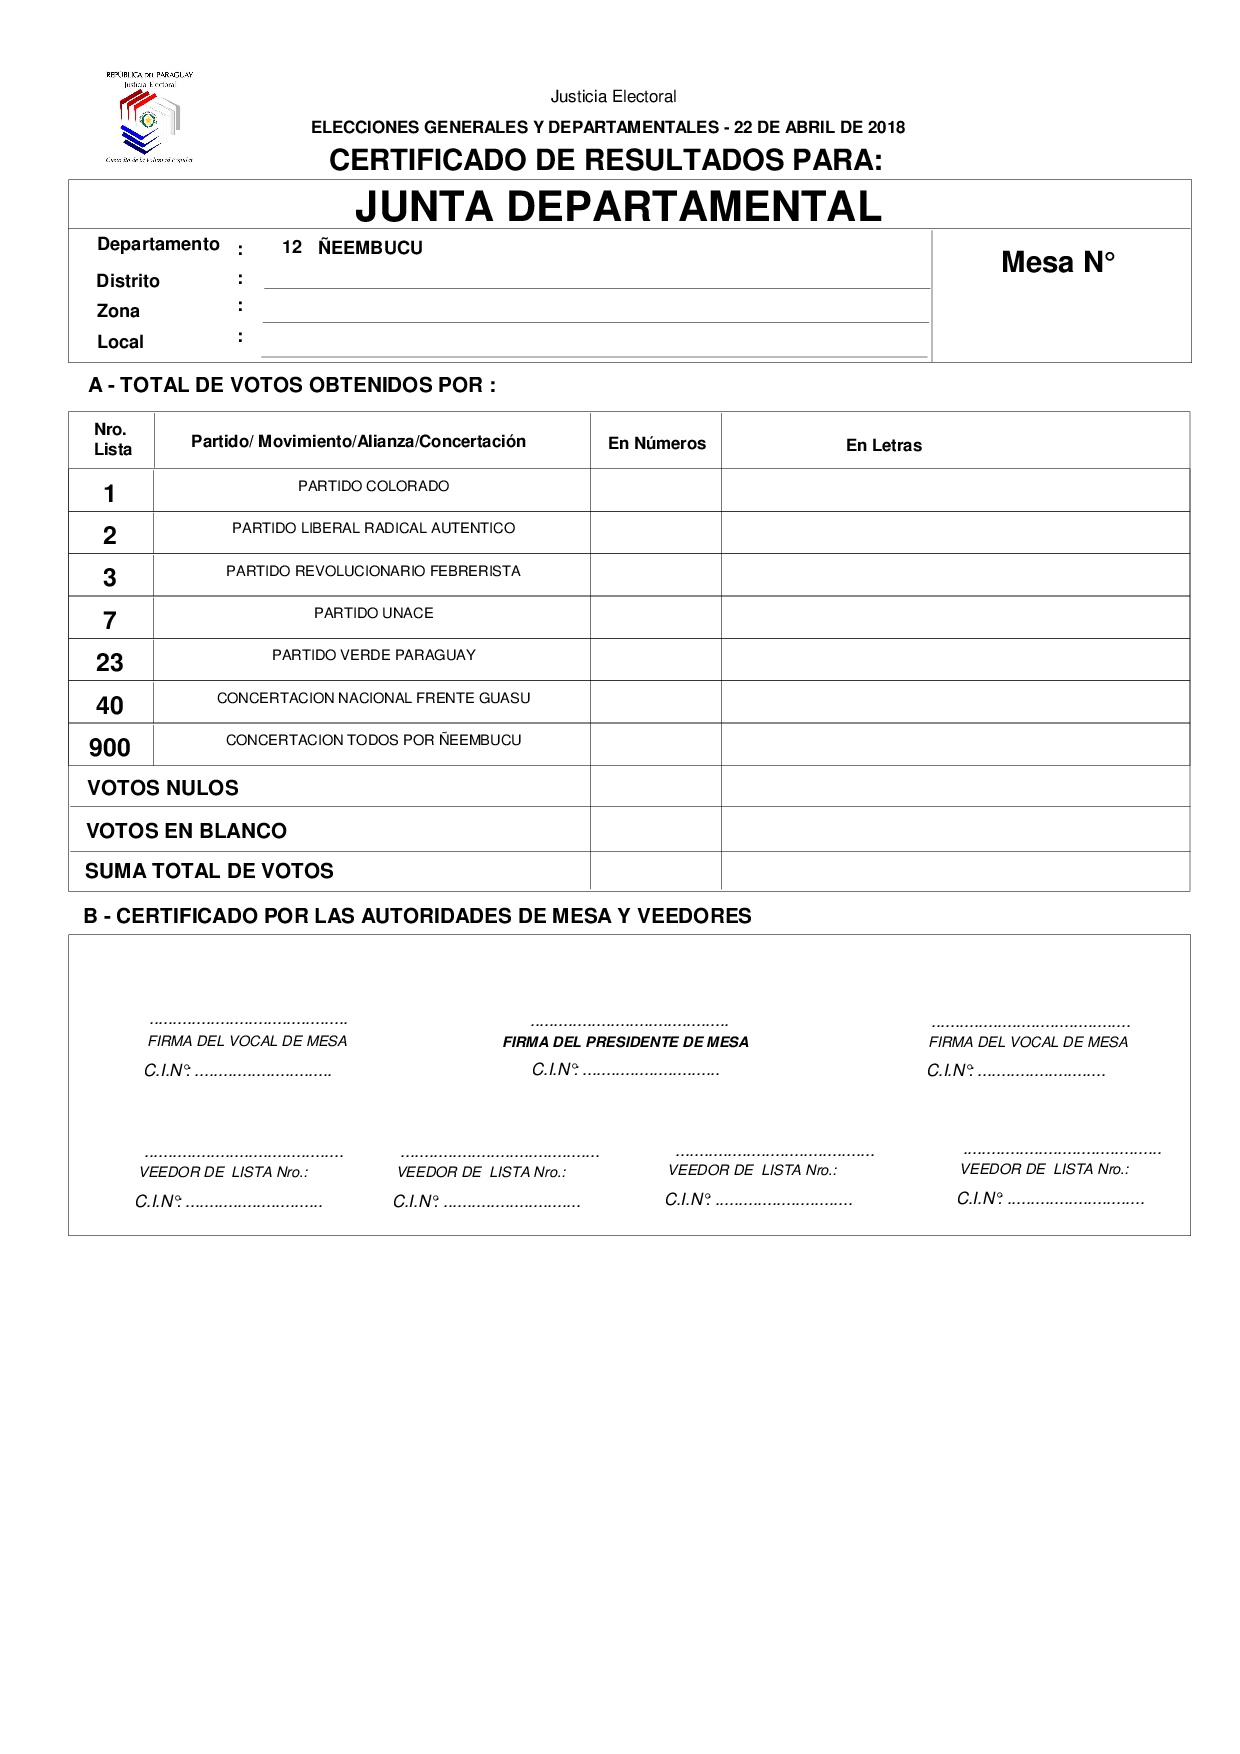 Certificado de Resultados Para JUNTA DEPARTAMENTAL DE ÑEEMBUCU